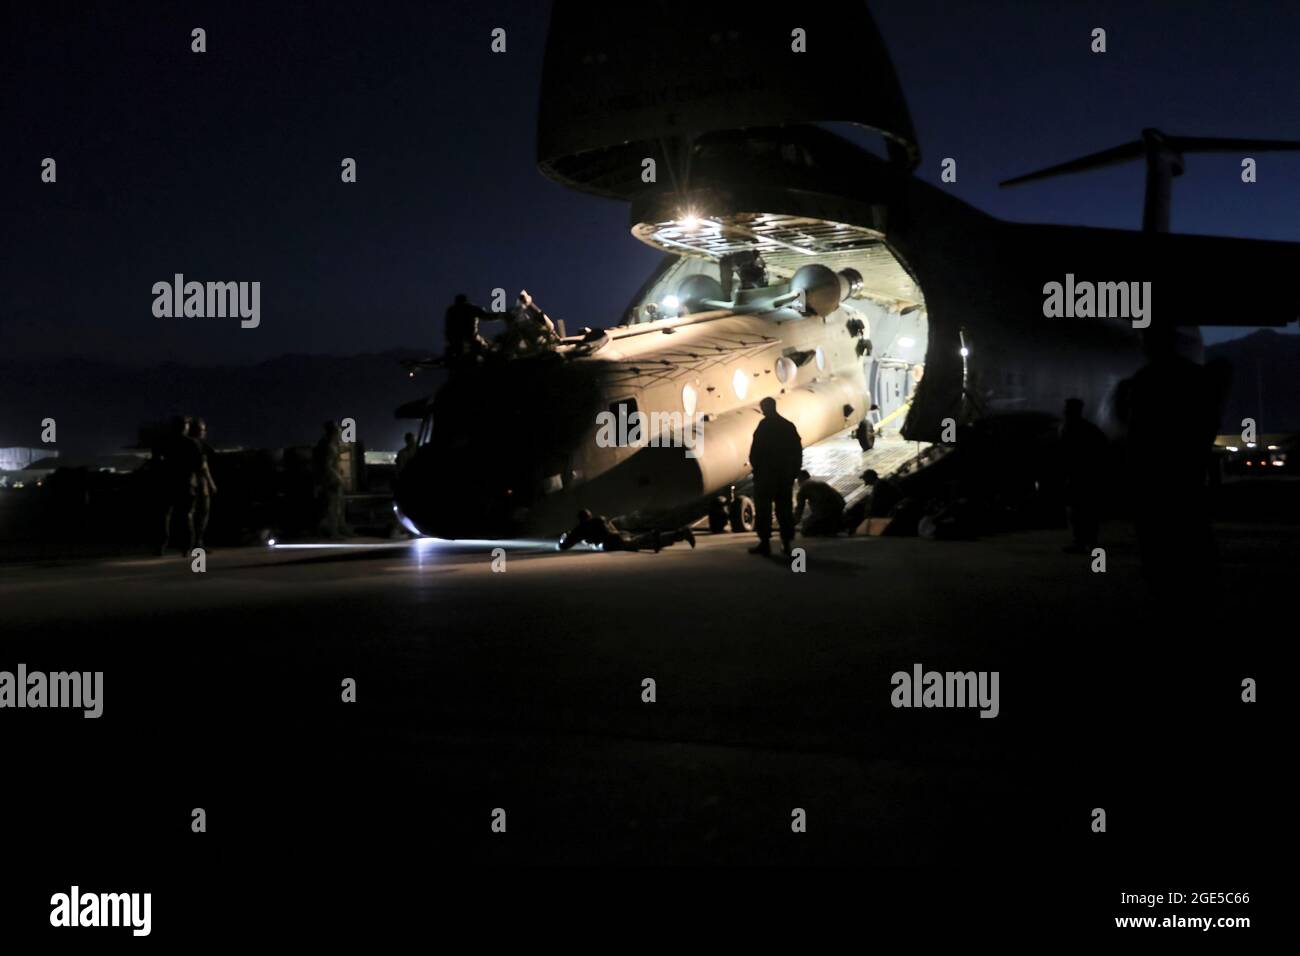 Antennenporteure arbeiten mit Betreuern zusammen, um einen CH-47 Chinook in einen C-17 Globemaster III zu laden, um die rückwirkende Mission Resolute Support in Afghanistan zu unterstützen, 16. Juni 2021. (USA Armeefoto von Sgt. Klasse Corey Vandiver) Stockfoto